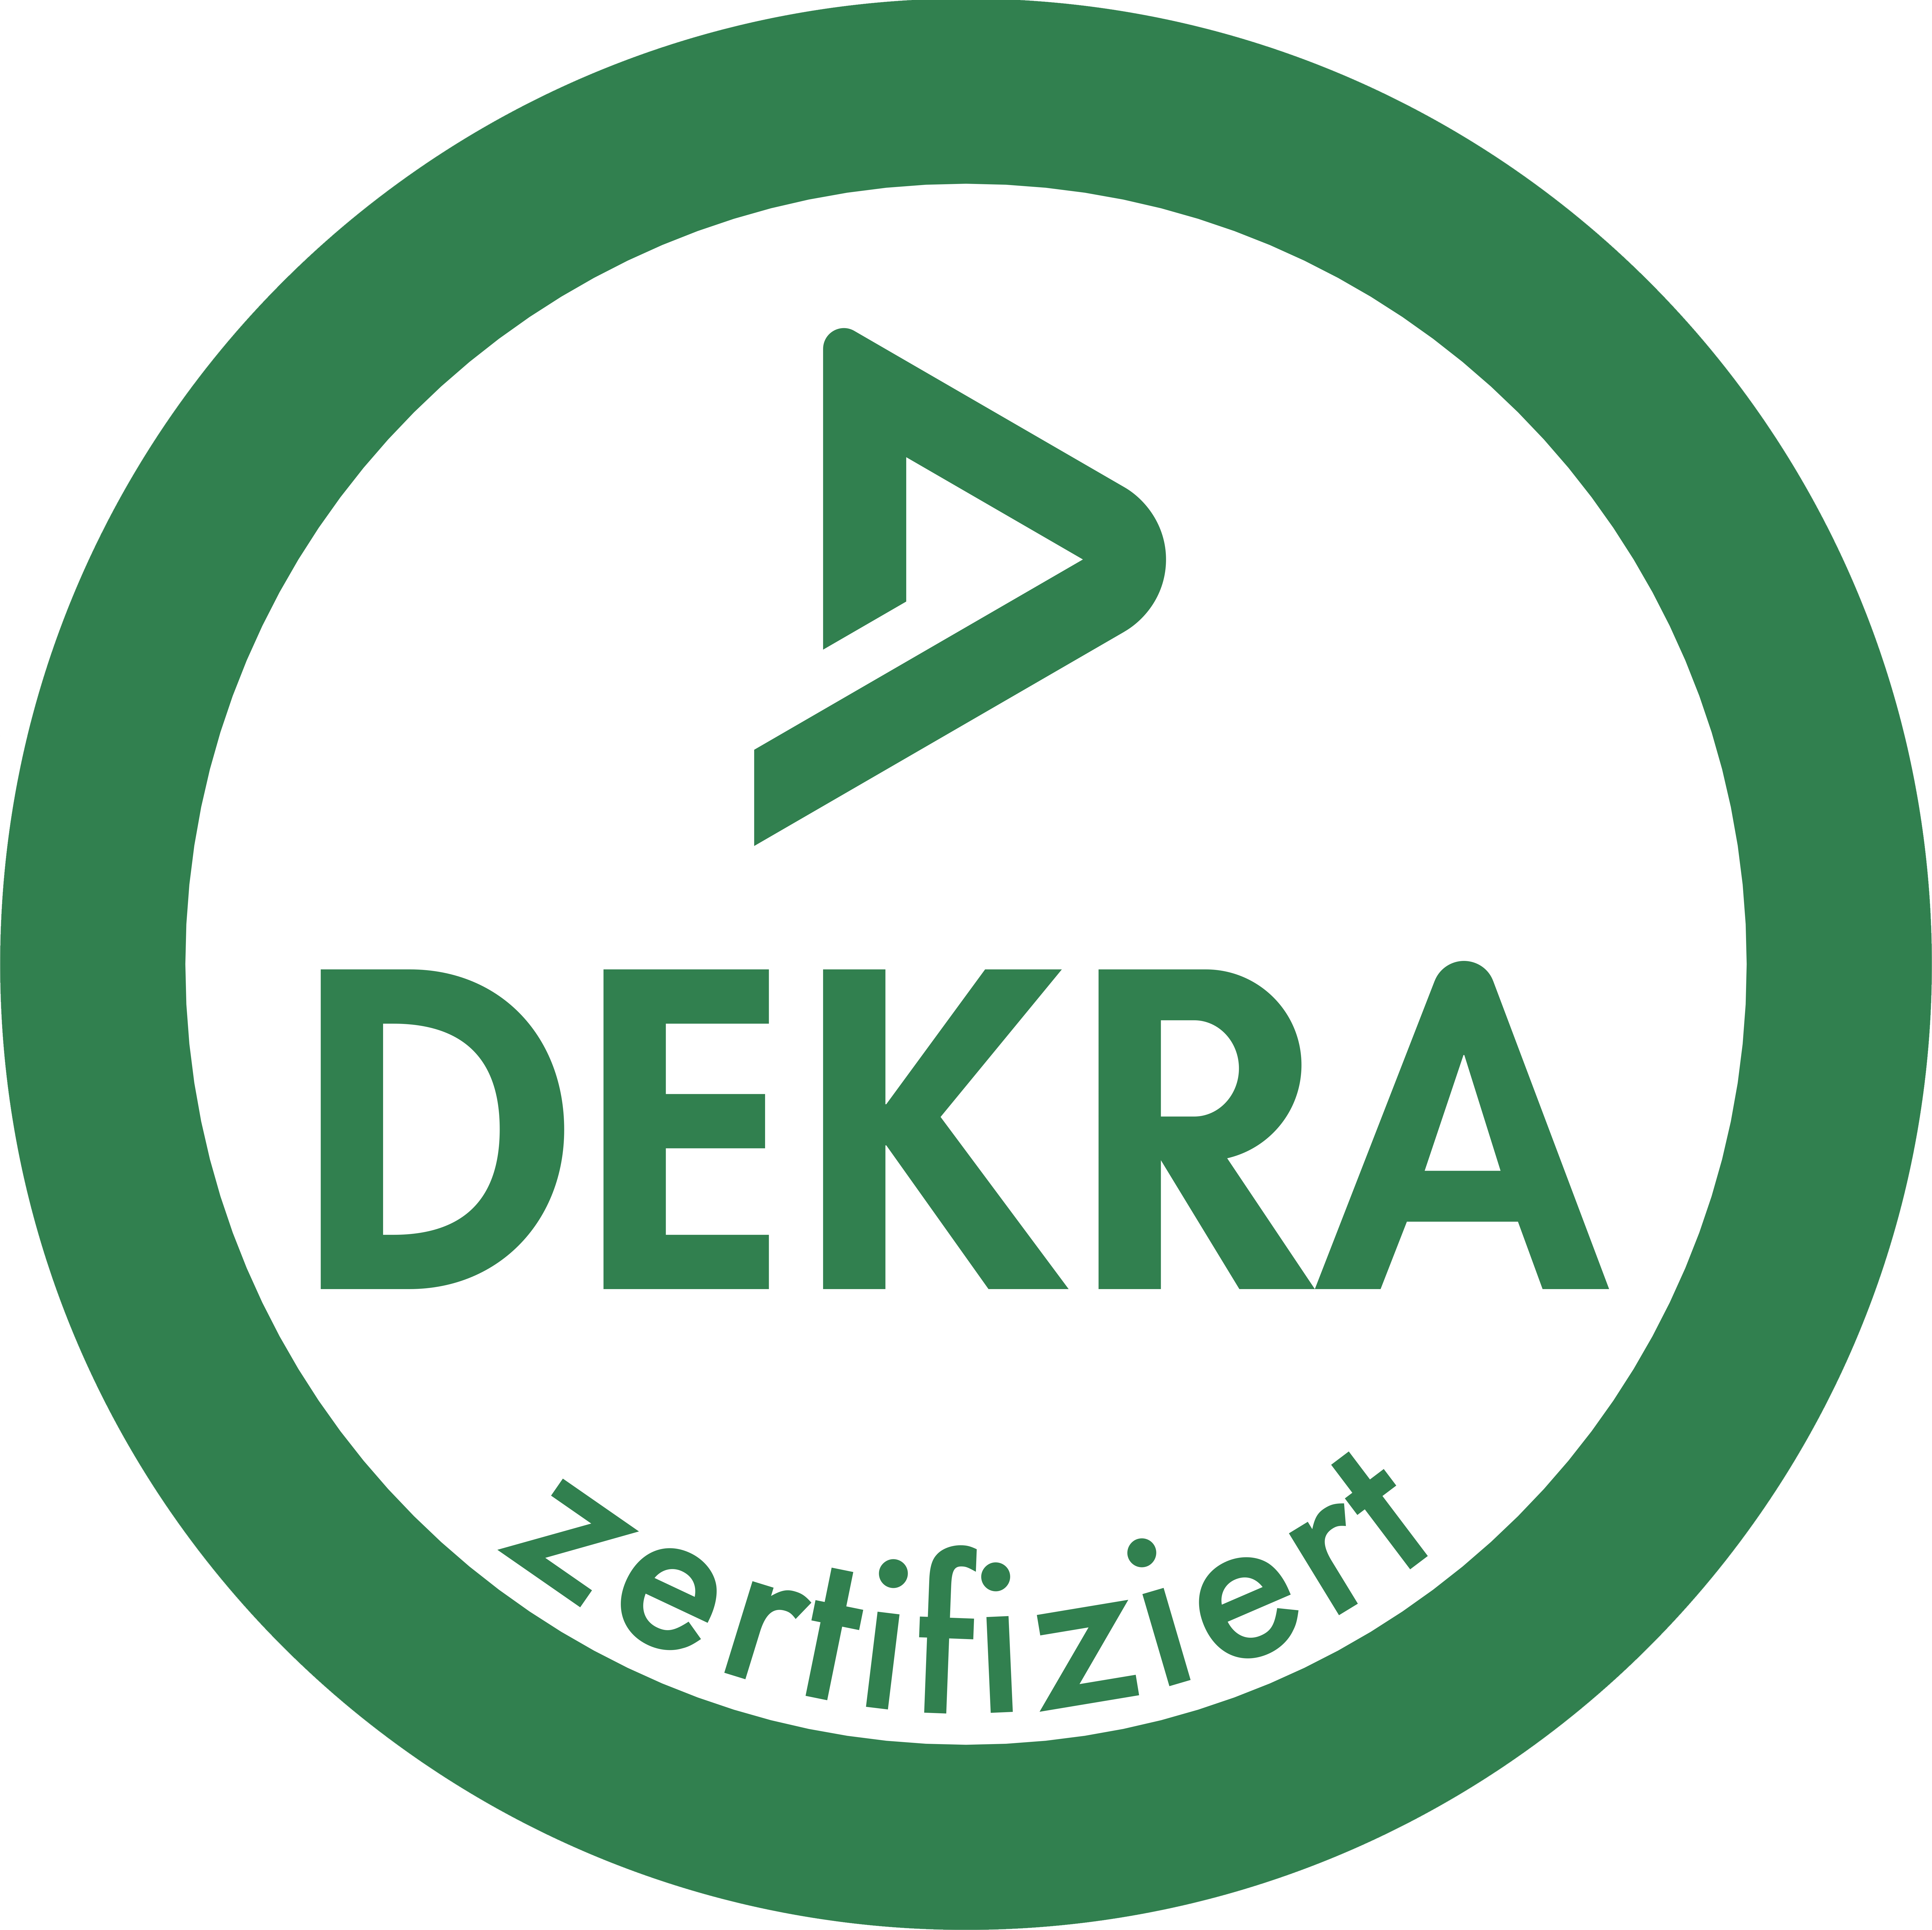 DEKRA Zertifiziert IT Sachverstndiger CoBaTh IT